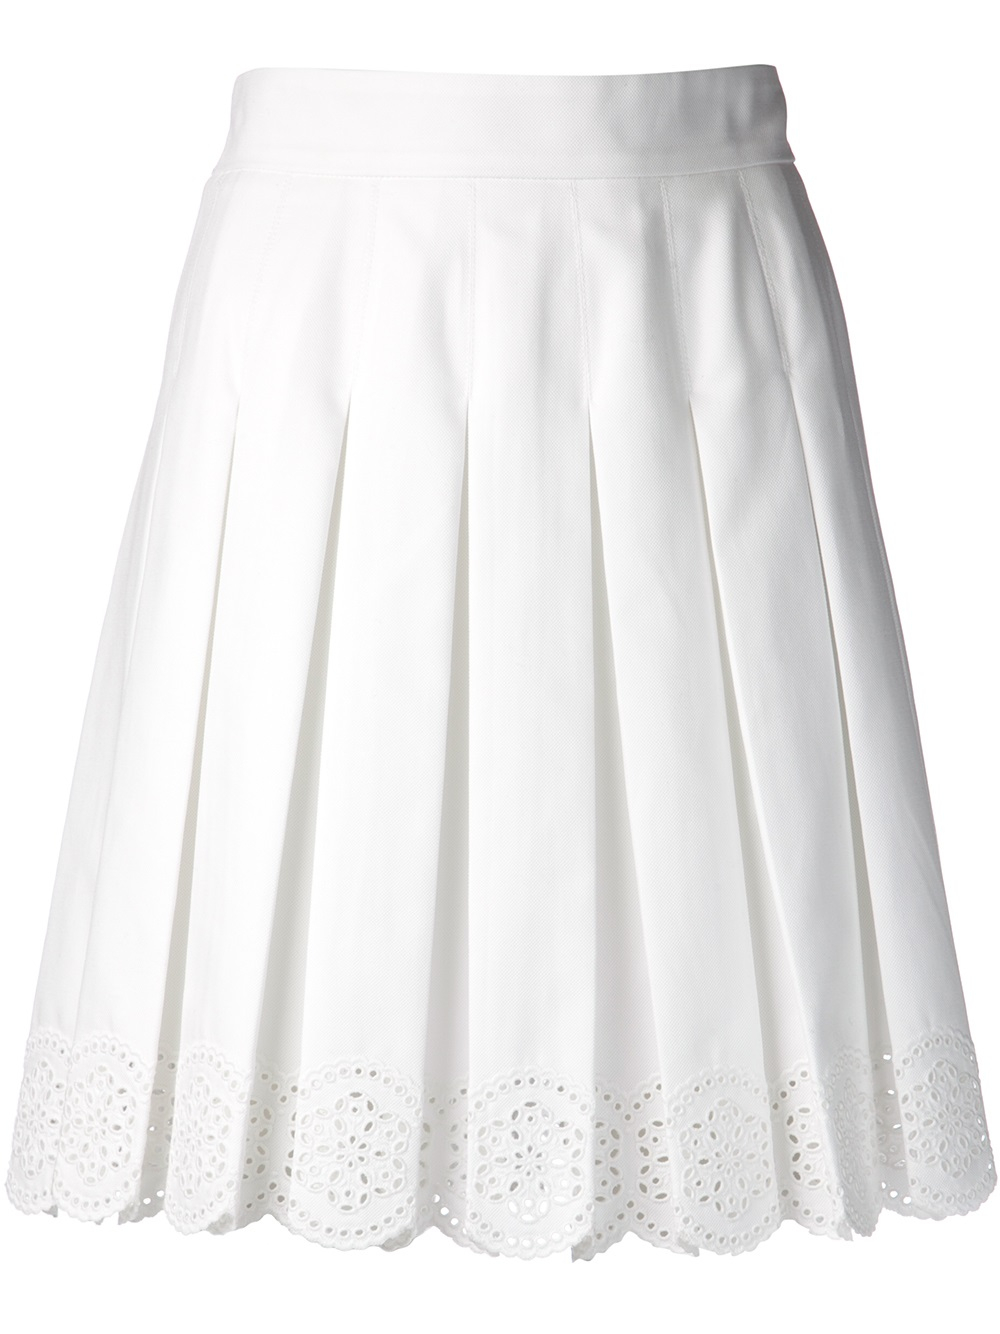 Lyst - Alexander mcqueen Eyelet Skirt in White